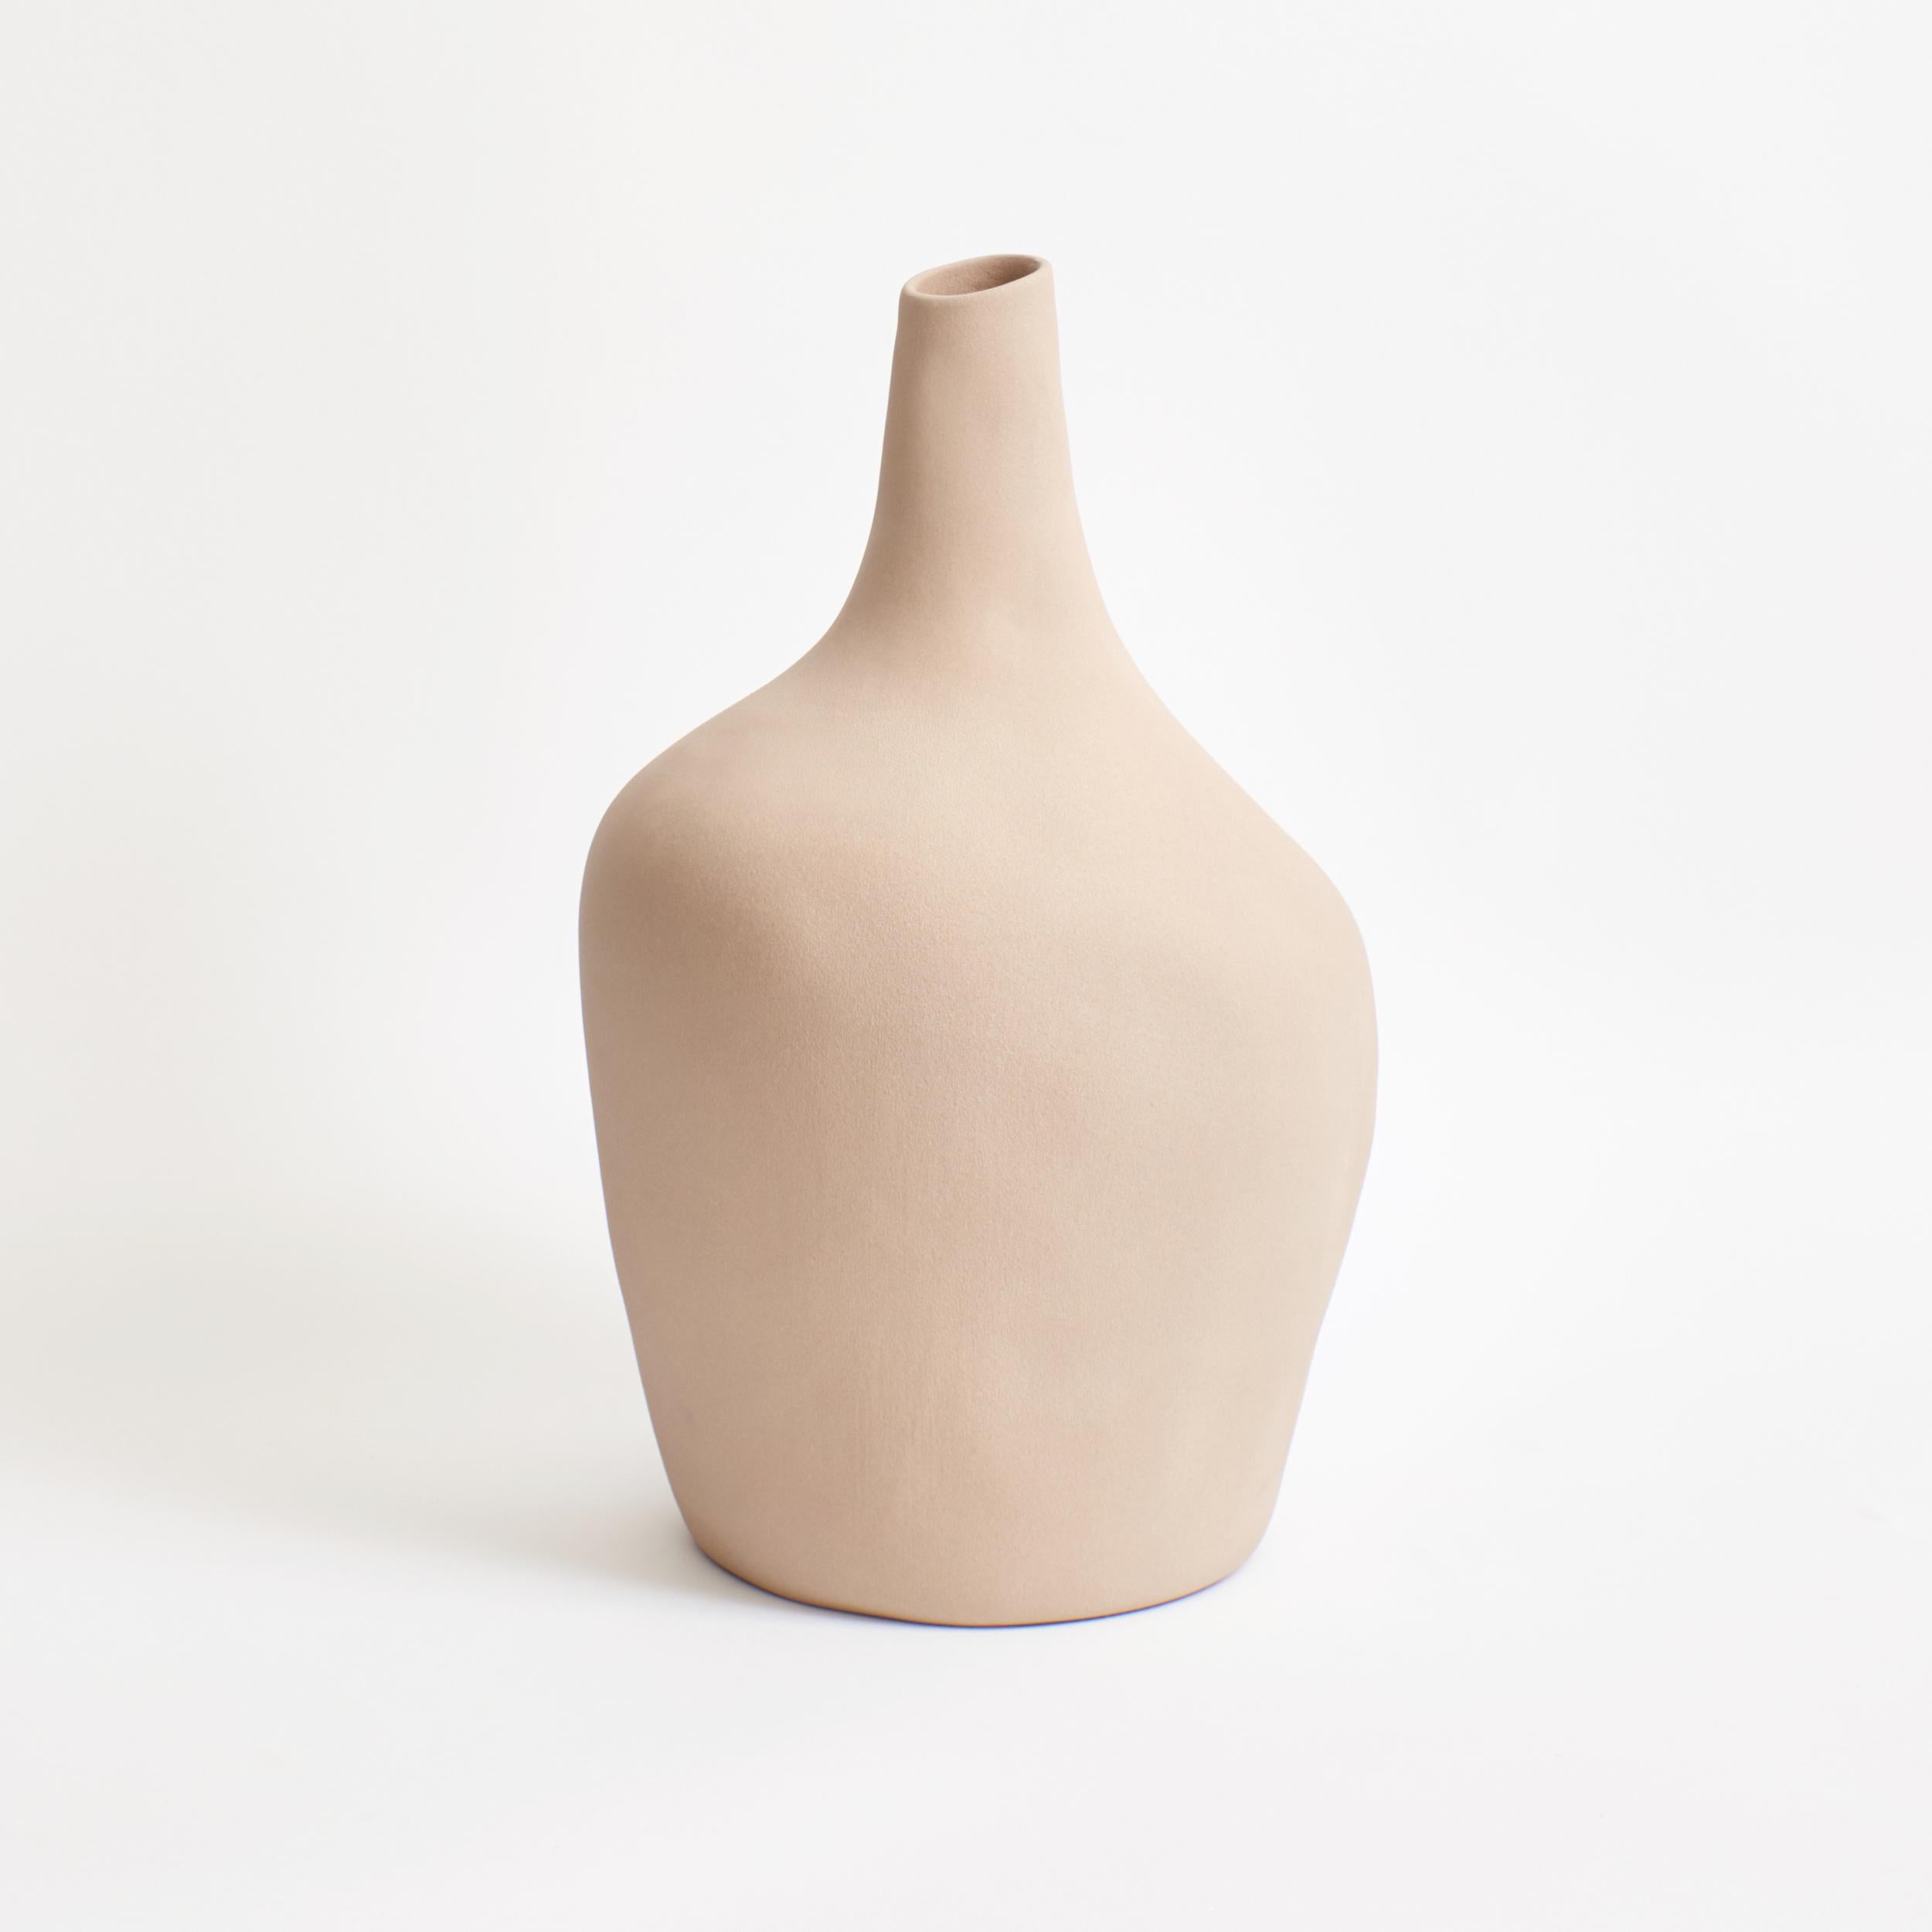 Die Sailor-Vase des Projekts 213A wurde 2020 entworfen und 2021 auf den Markt gebracht.
Die Glasur hat eine raue, fast sandige Textur und ist in einer weichen Beige-Oatfarbe erhältlich
Handgefertigt in Portugal von lokalen Handwerkern.
Diese Vase